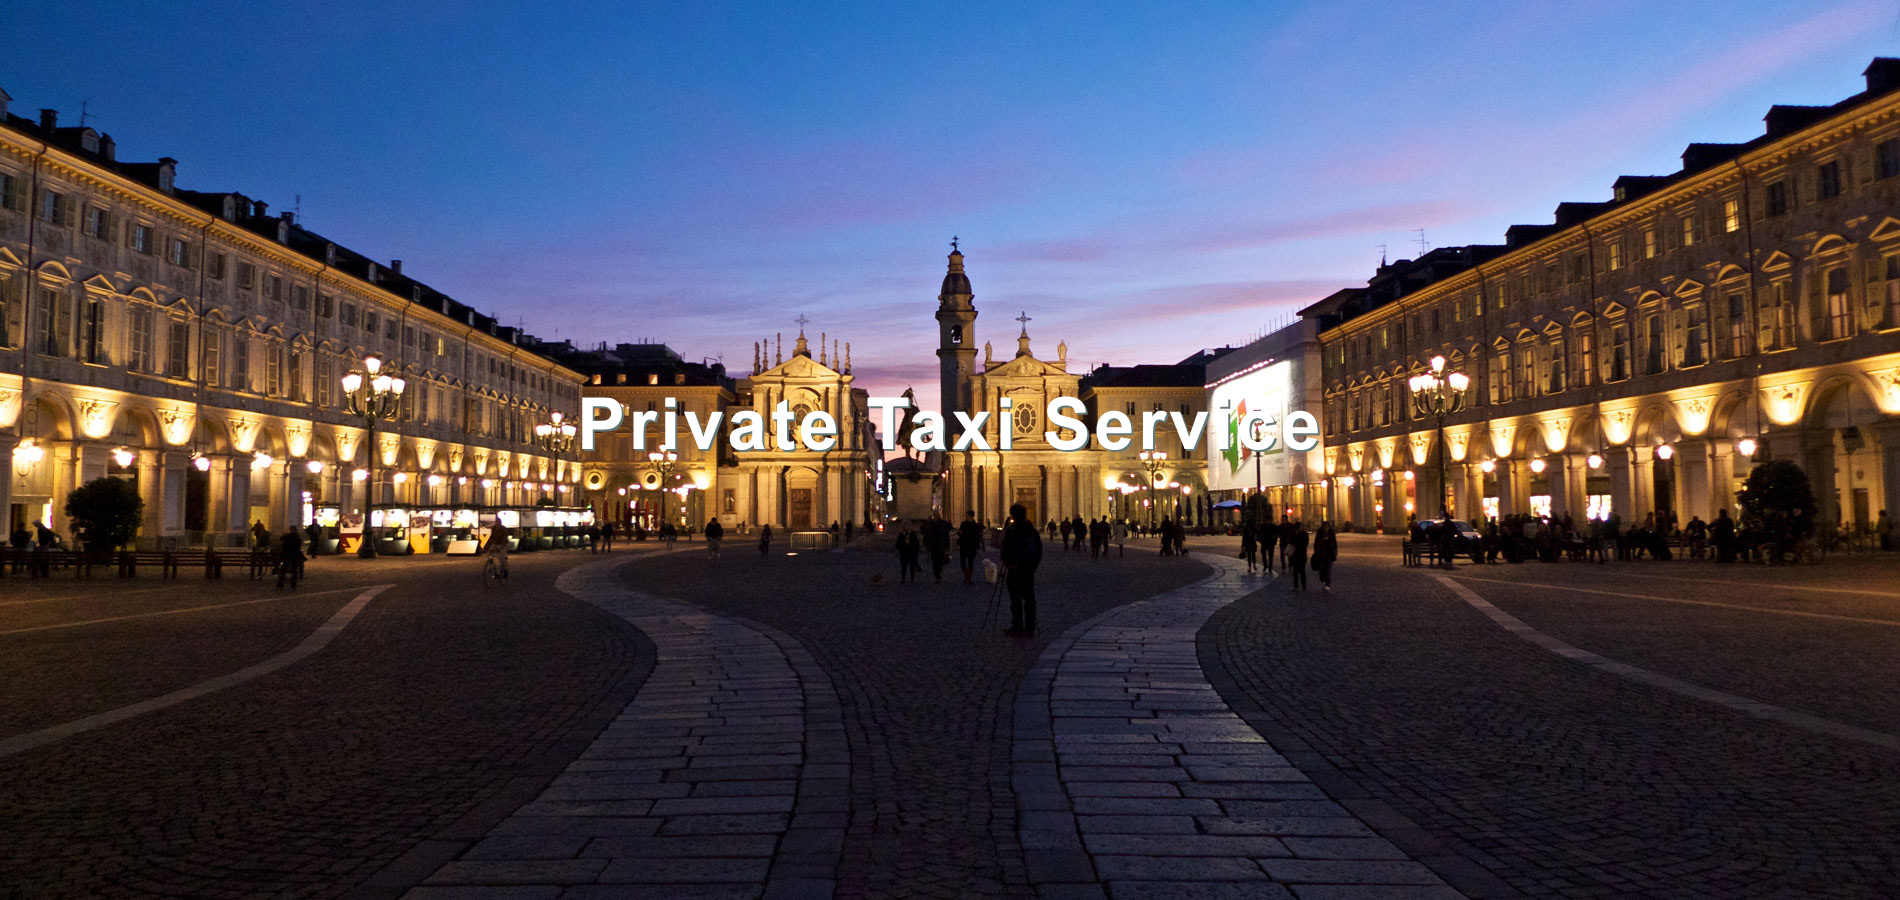 Private Taxi Service - Consorzio Blurent Torino